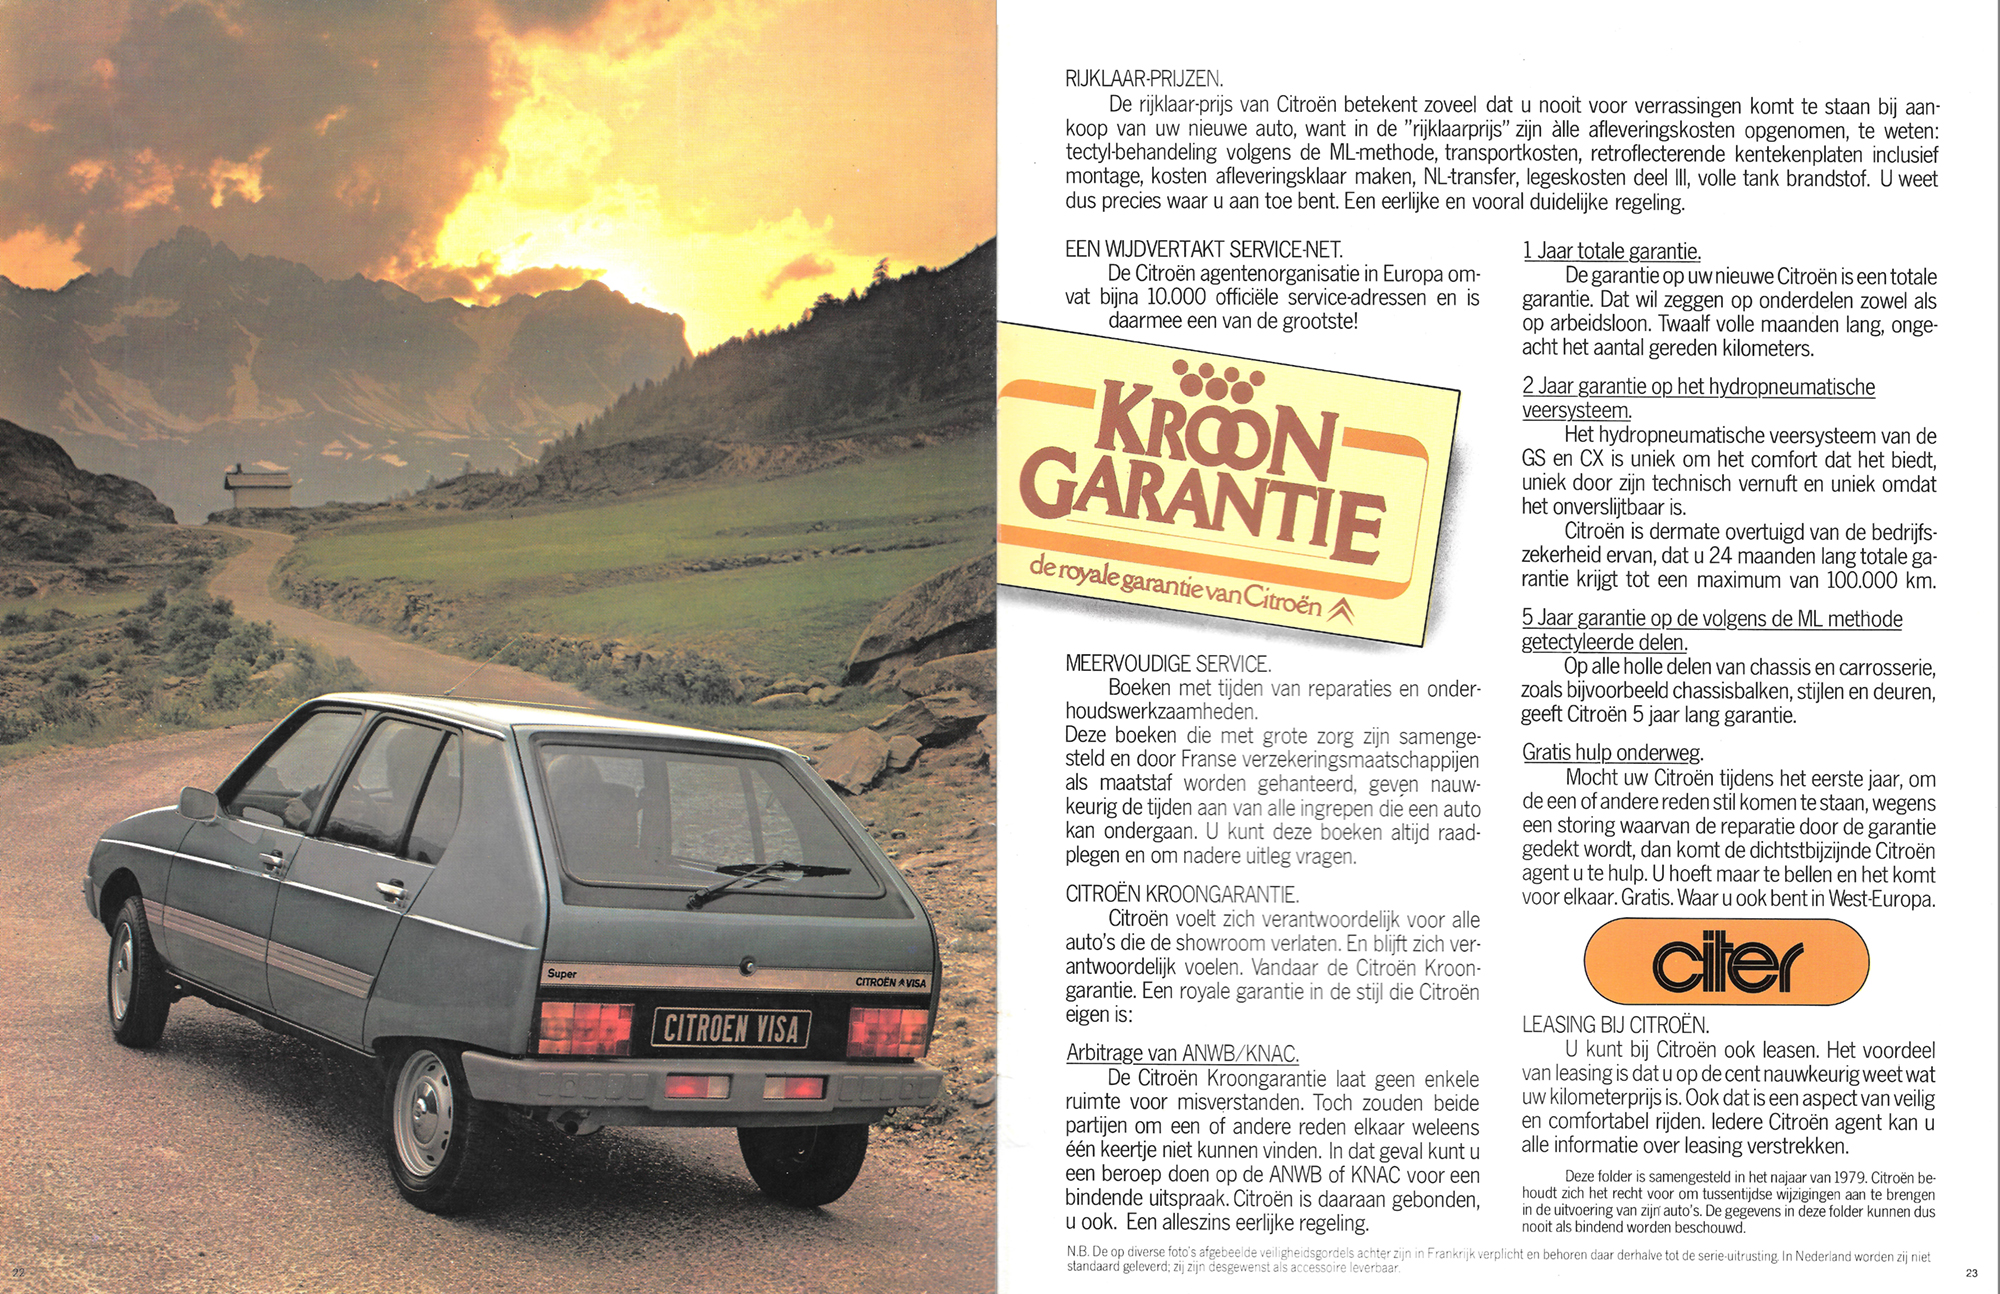 Catalogue pub auto prospectus voiture Citroën Visa 1979 